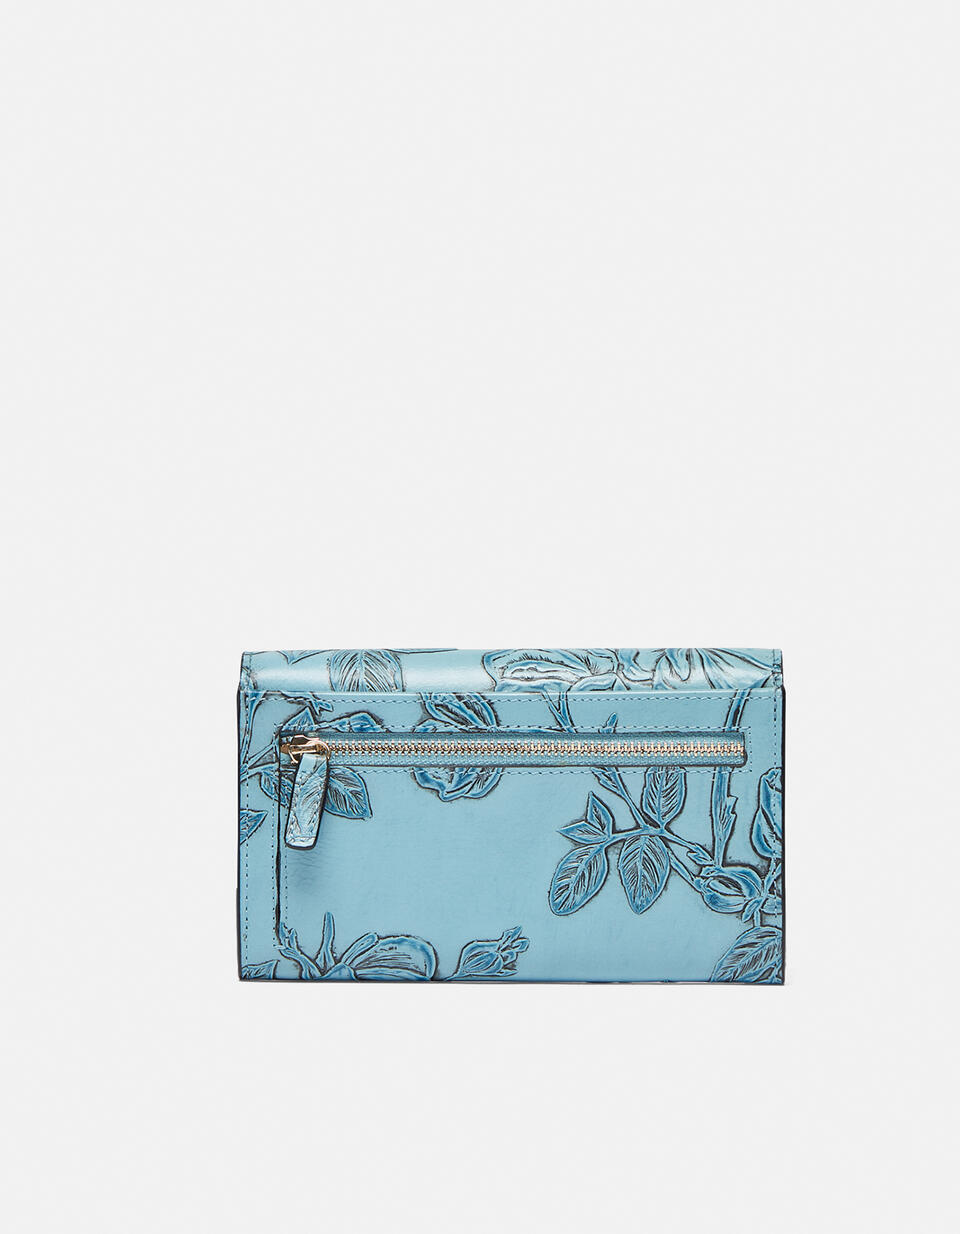 Accordian style wallet Light blue  - Women's Wallets - Women's Wallets - Wallets - Cuoieria Fiorentina